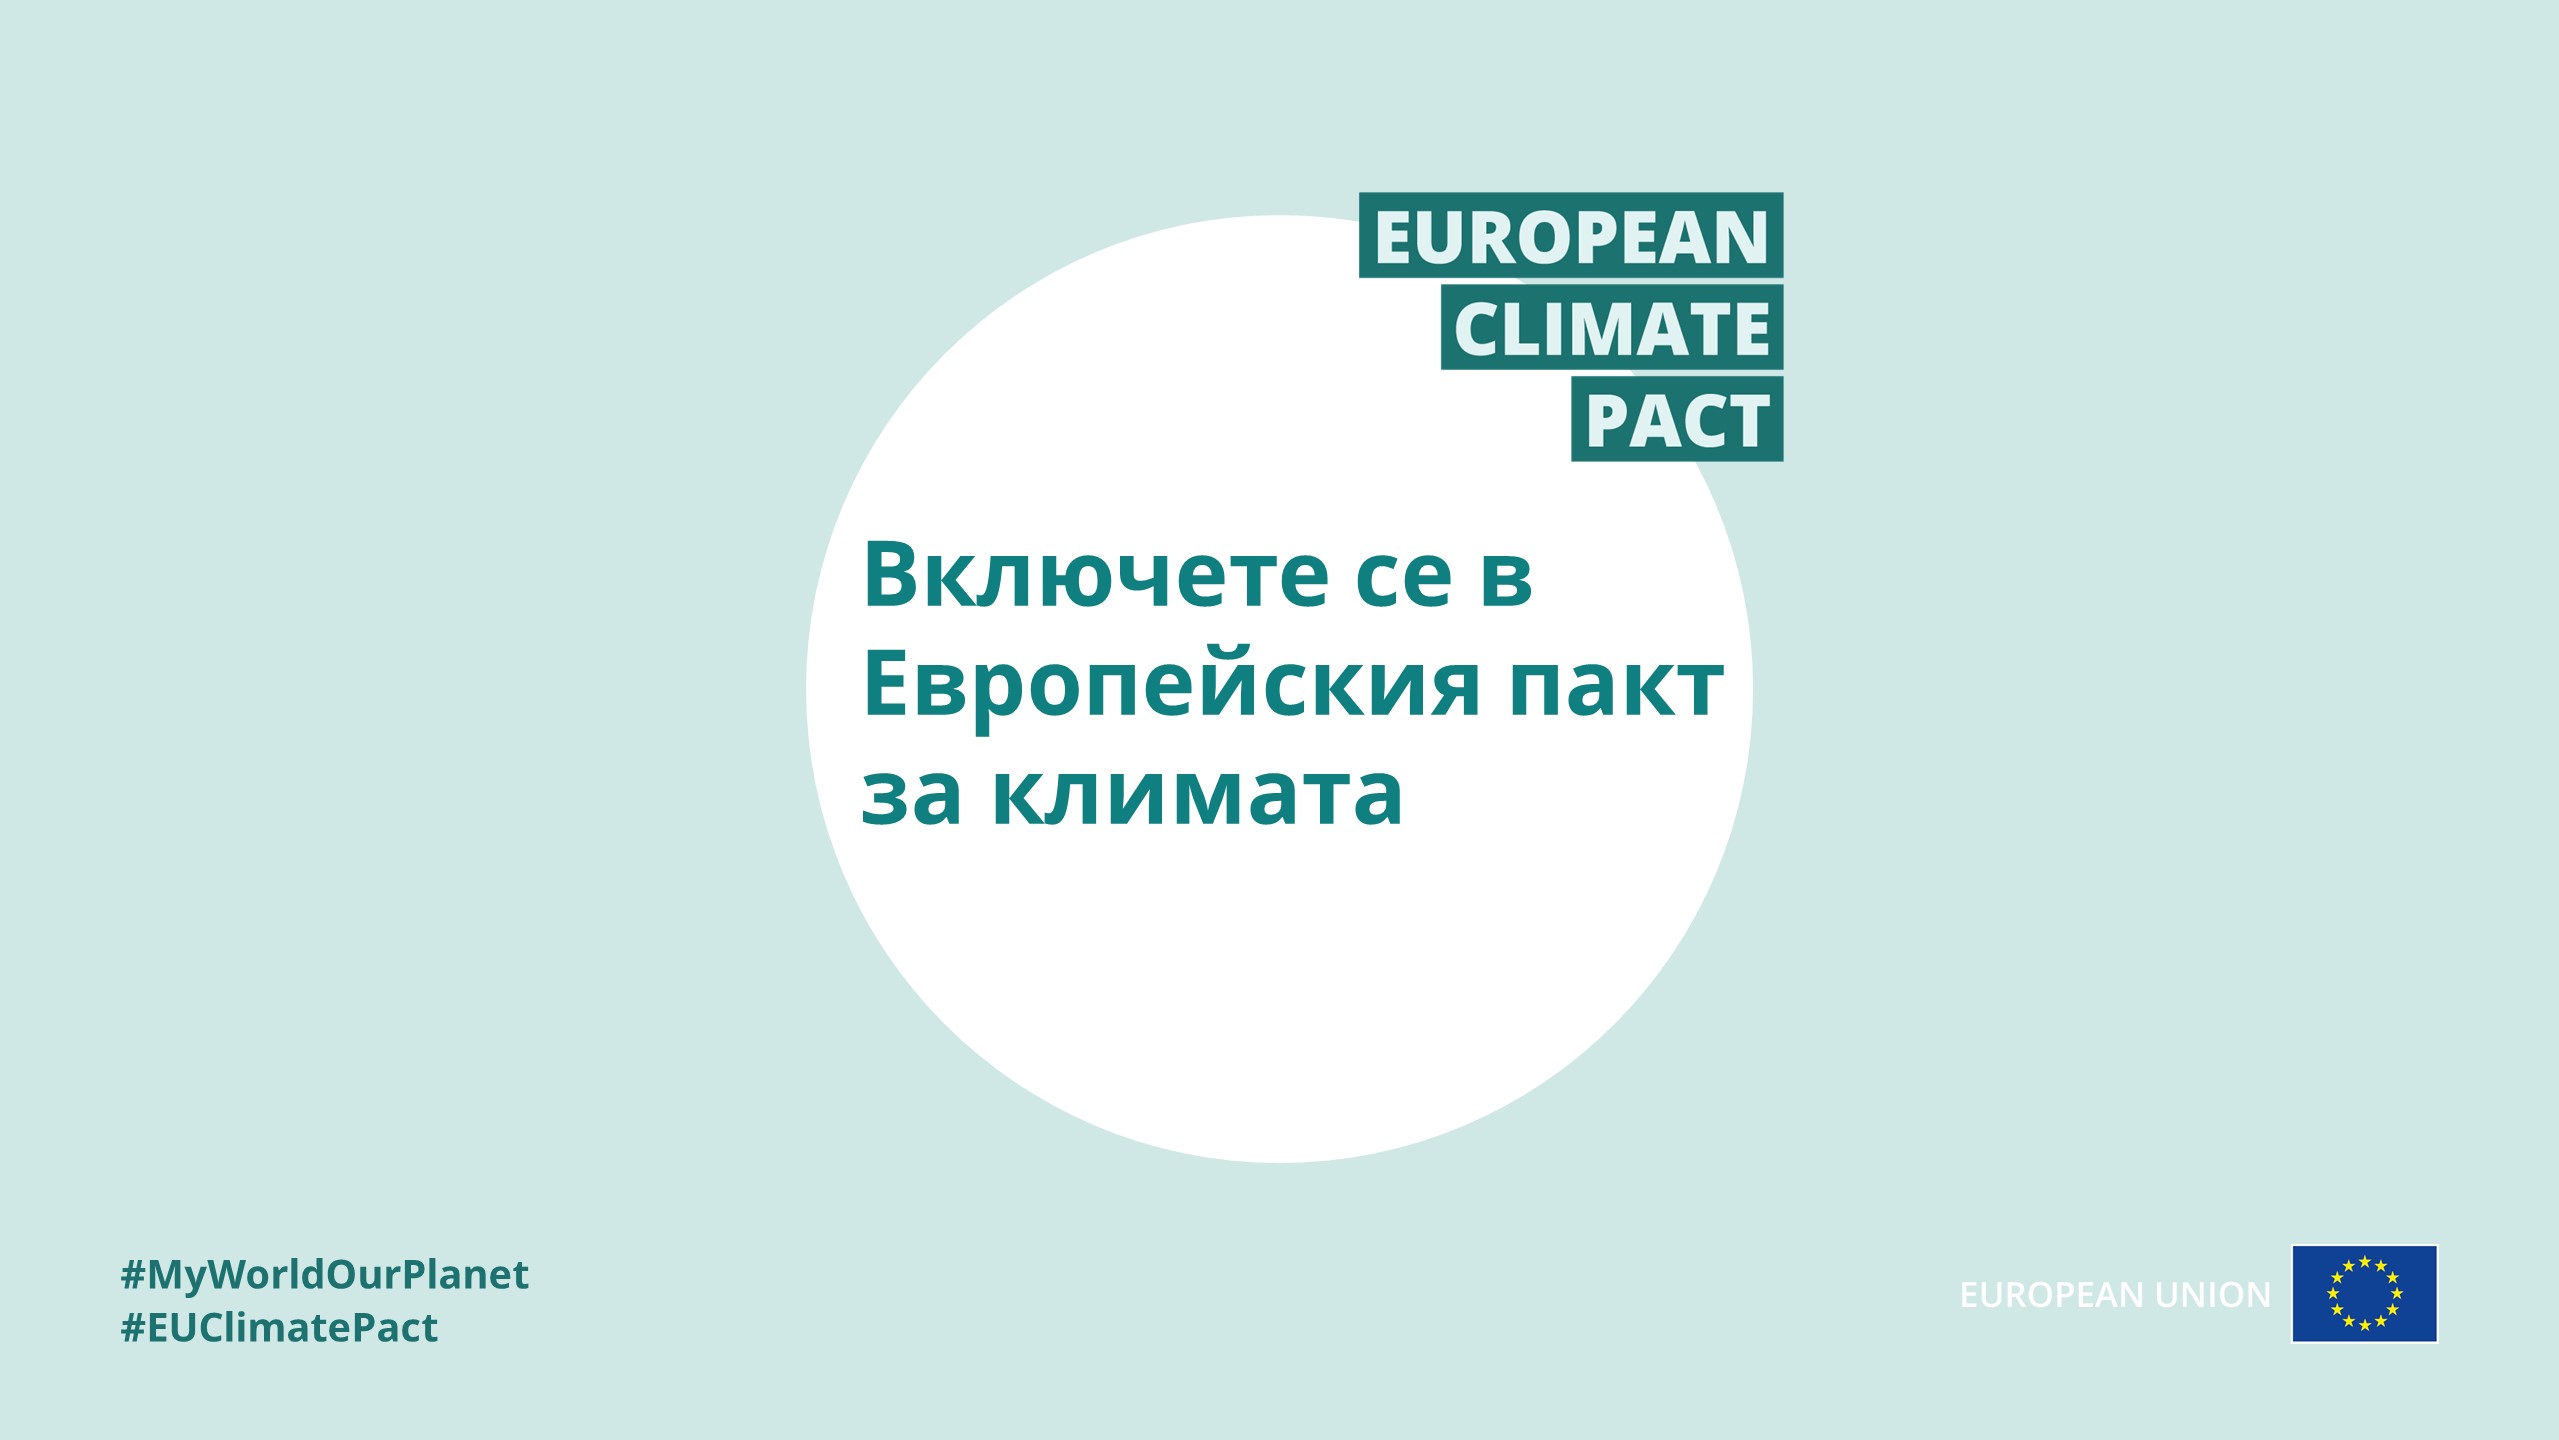 Включeте се в Европейския пакт за климата